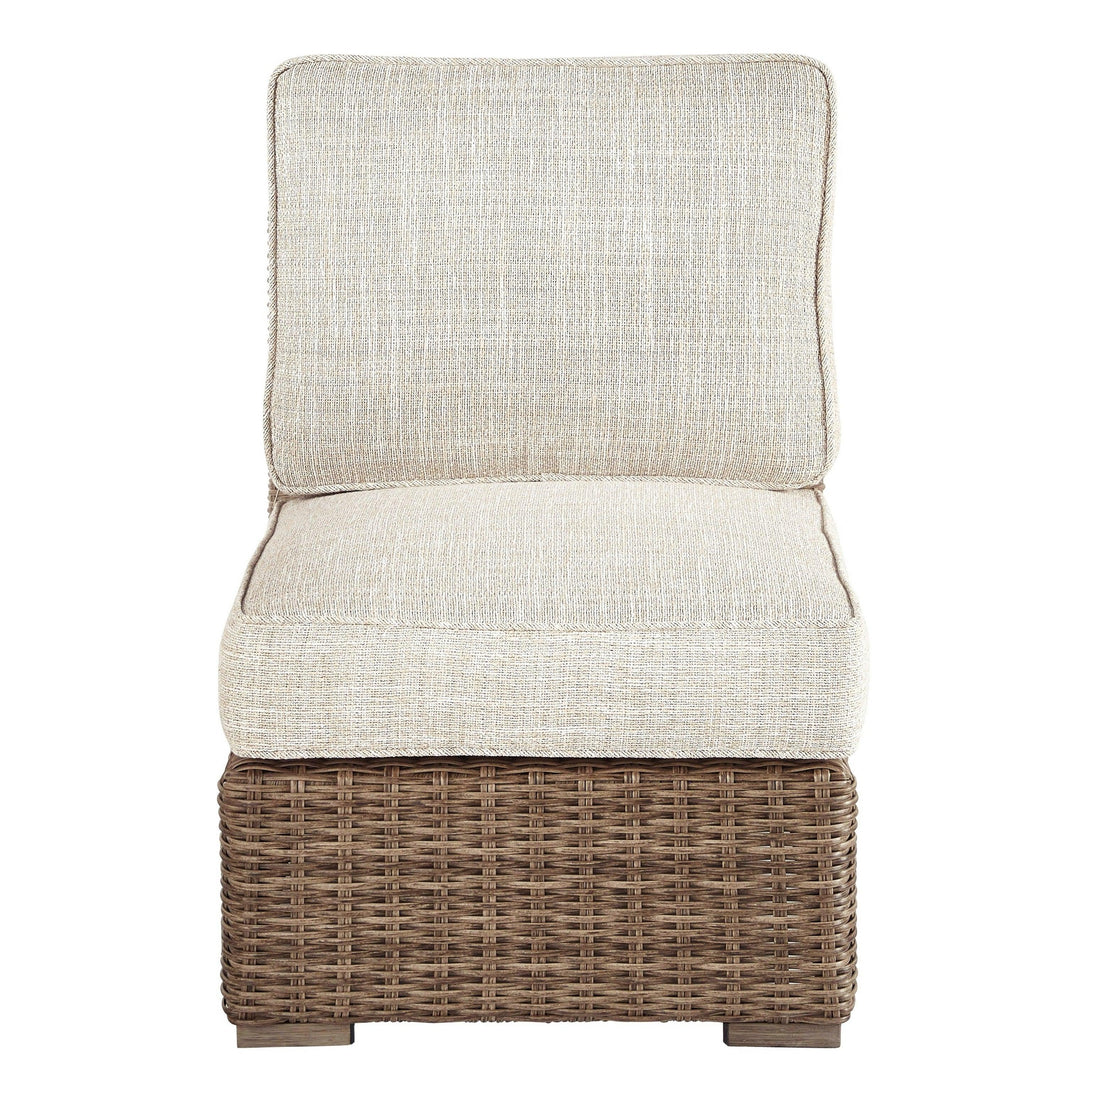 Beachcroft Armless Chair with Cushion Ash-P791-846